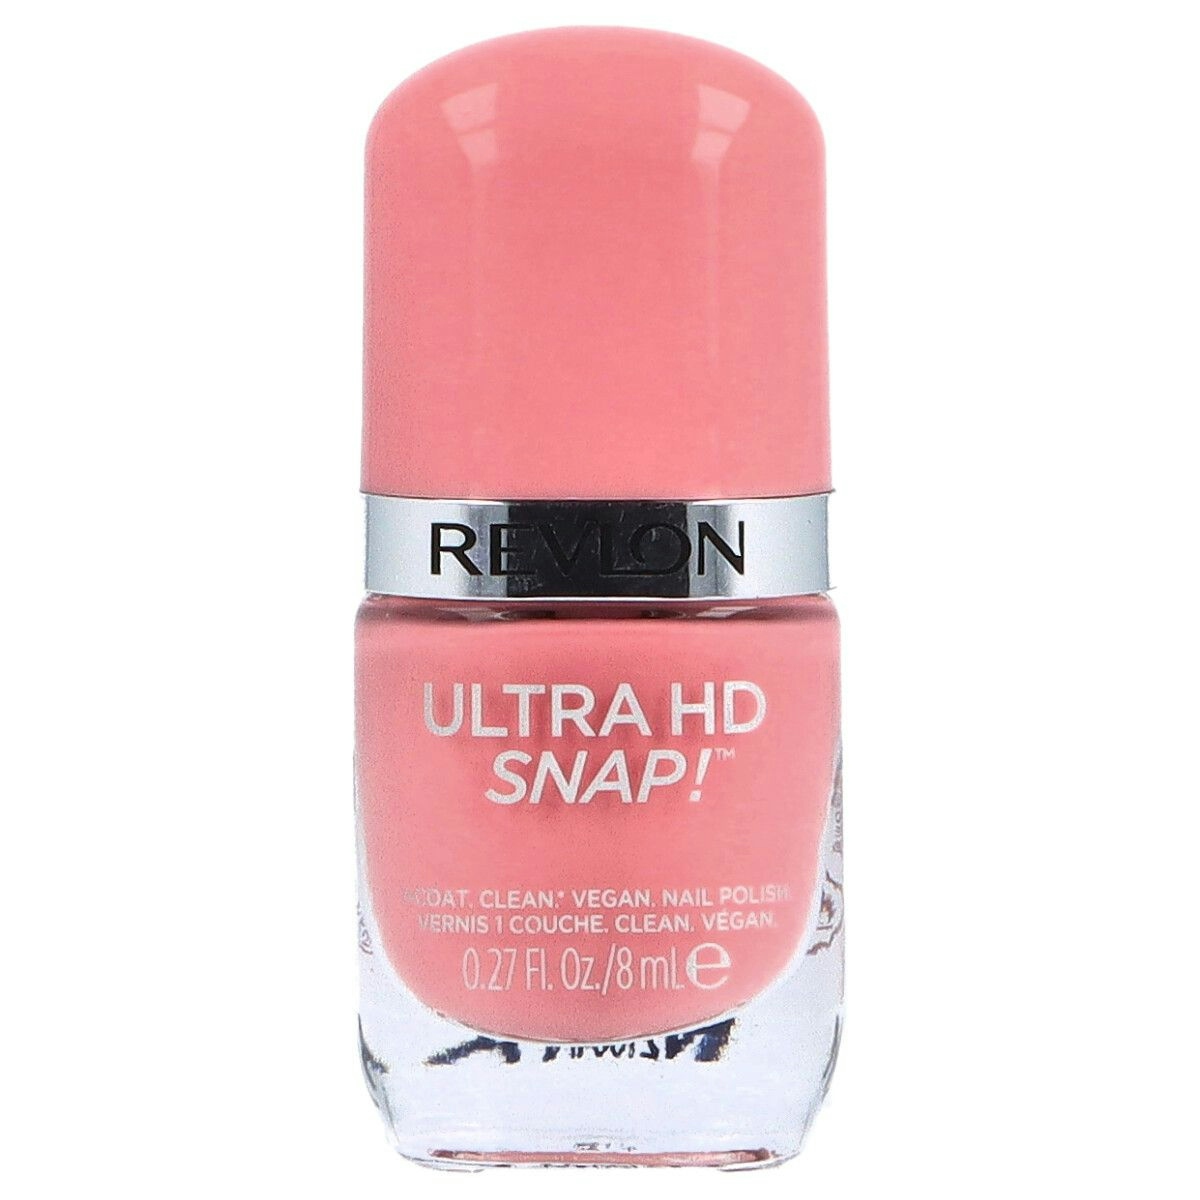 Esmalte de uñas Ultra HD Snap! de REVLON